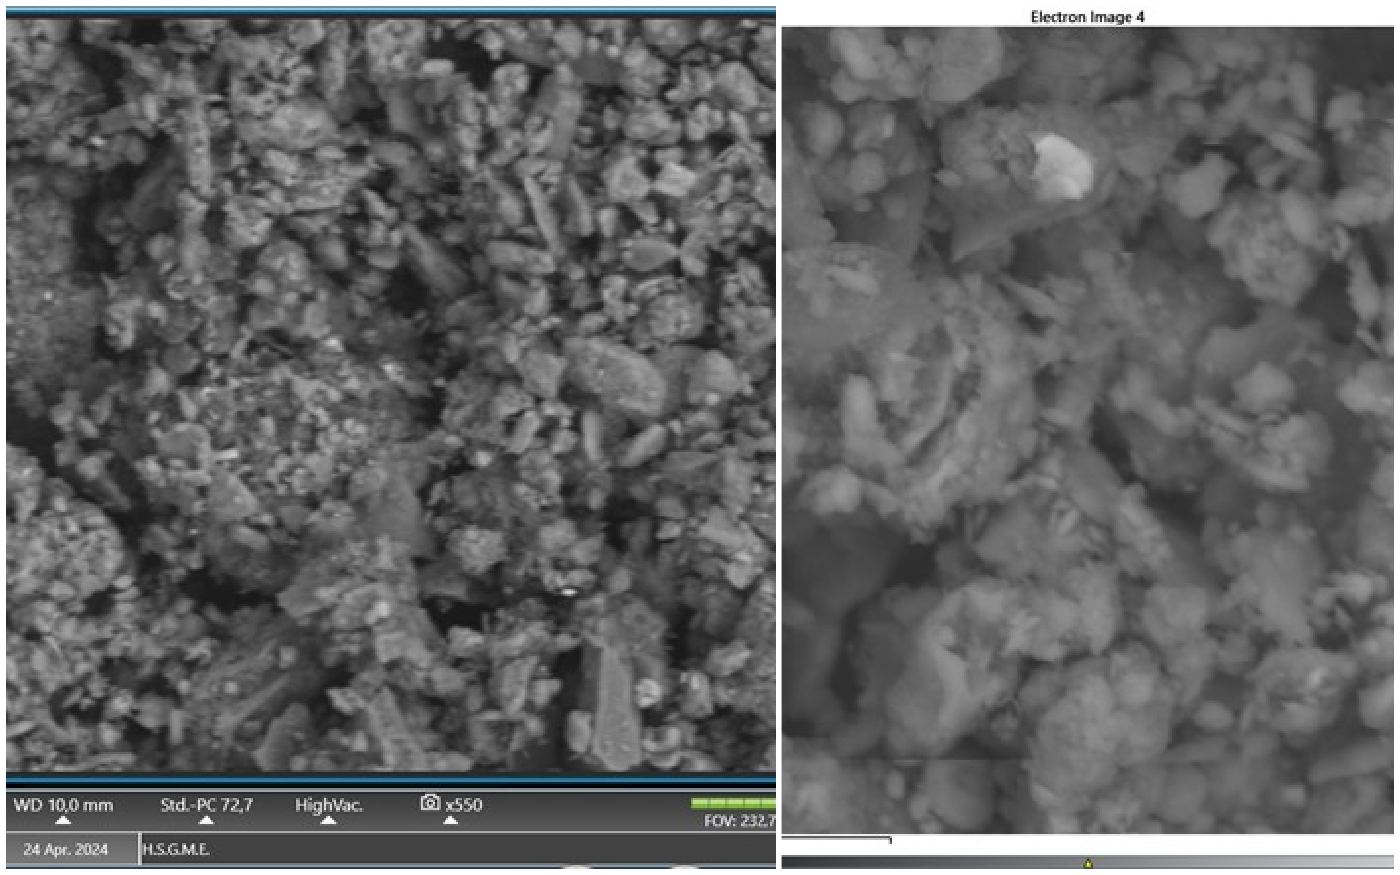 αφρικανική σκόνη: τι έδειξε το ηλεκτρονικό μικροσκόπιο της εαγμε που ανέλυσε δείγματα από την αττική